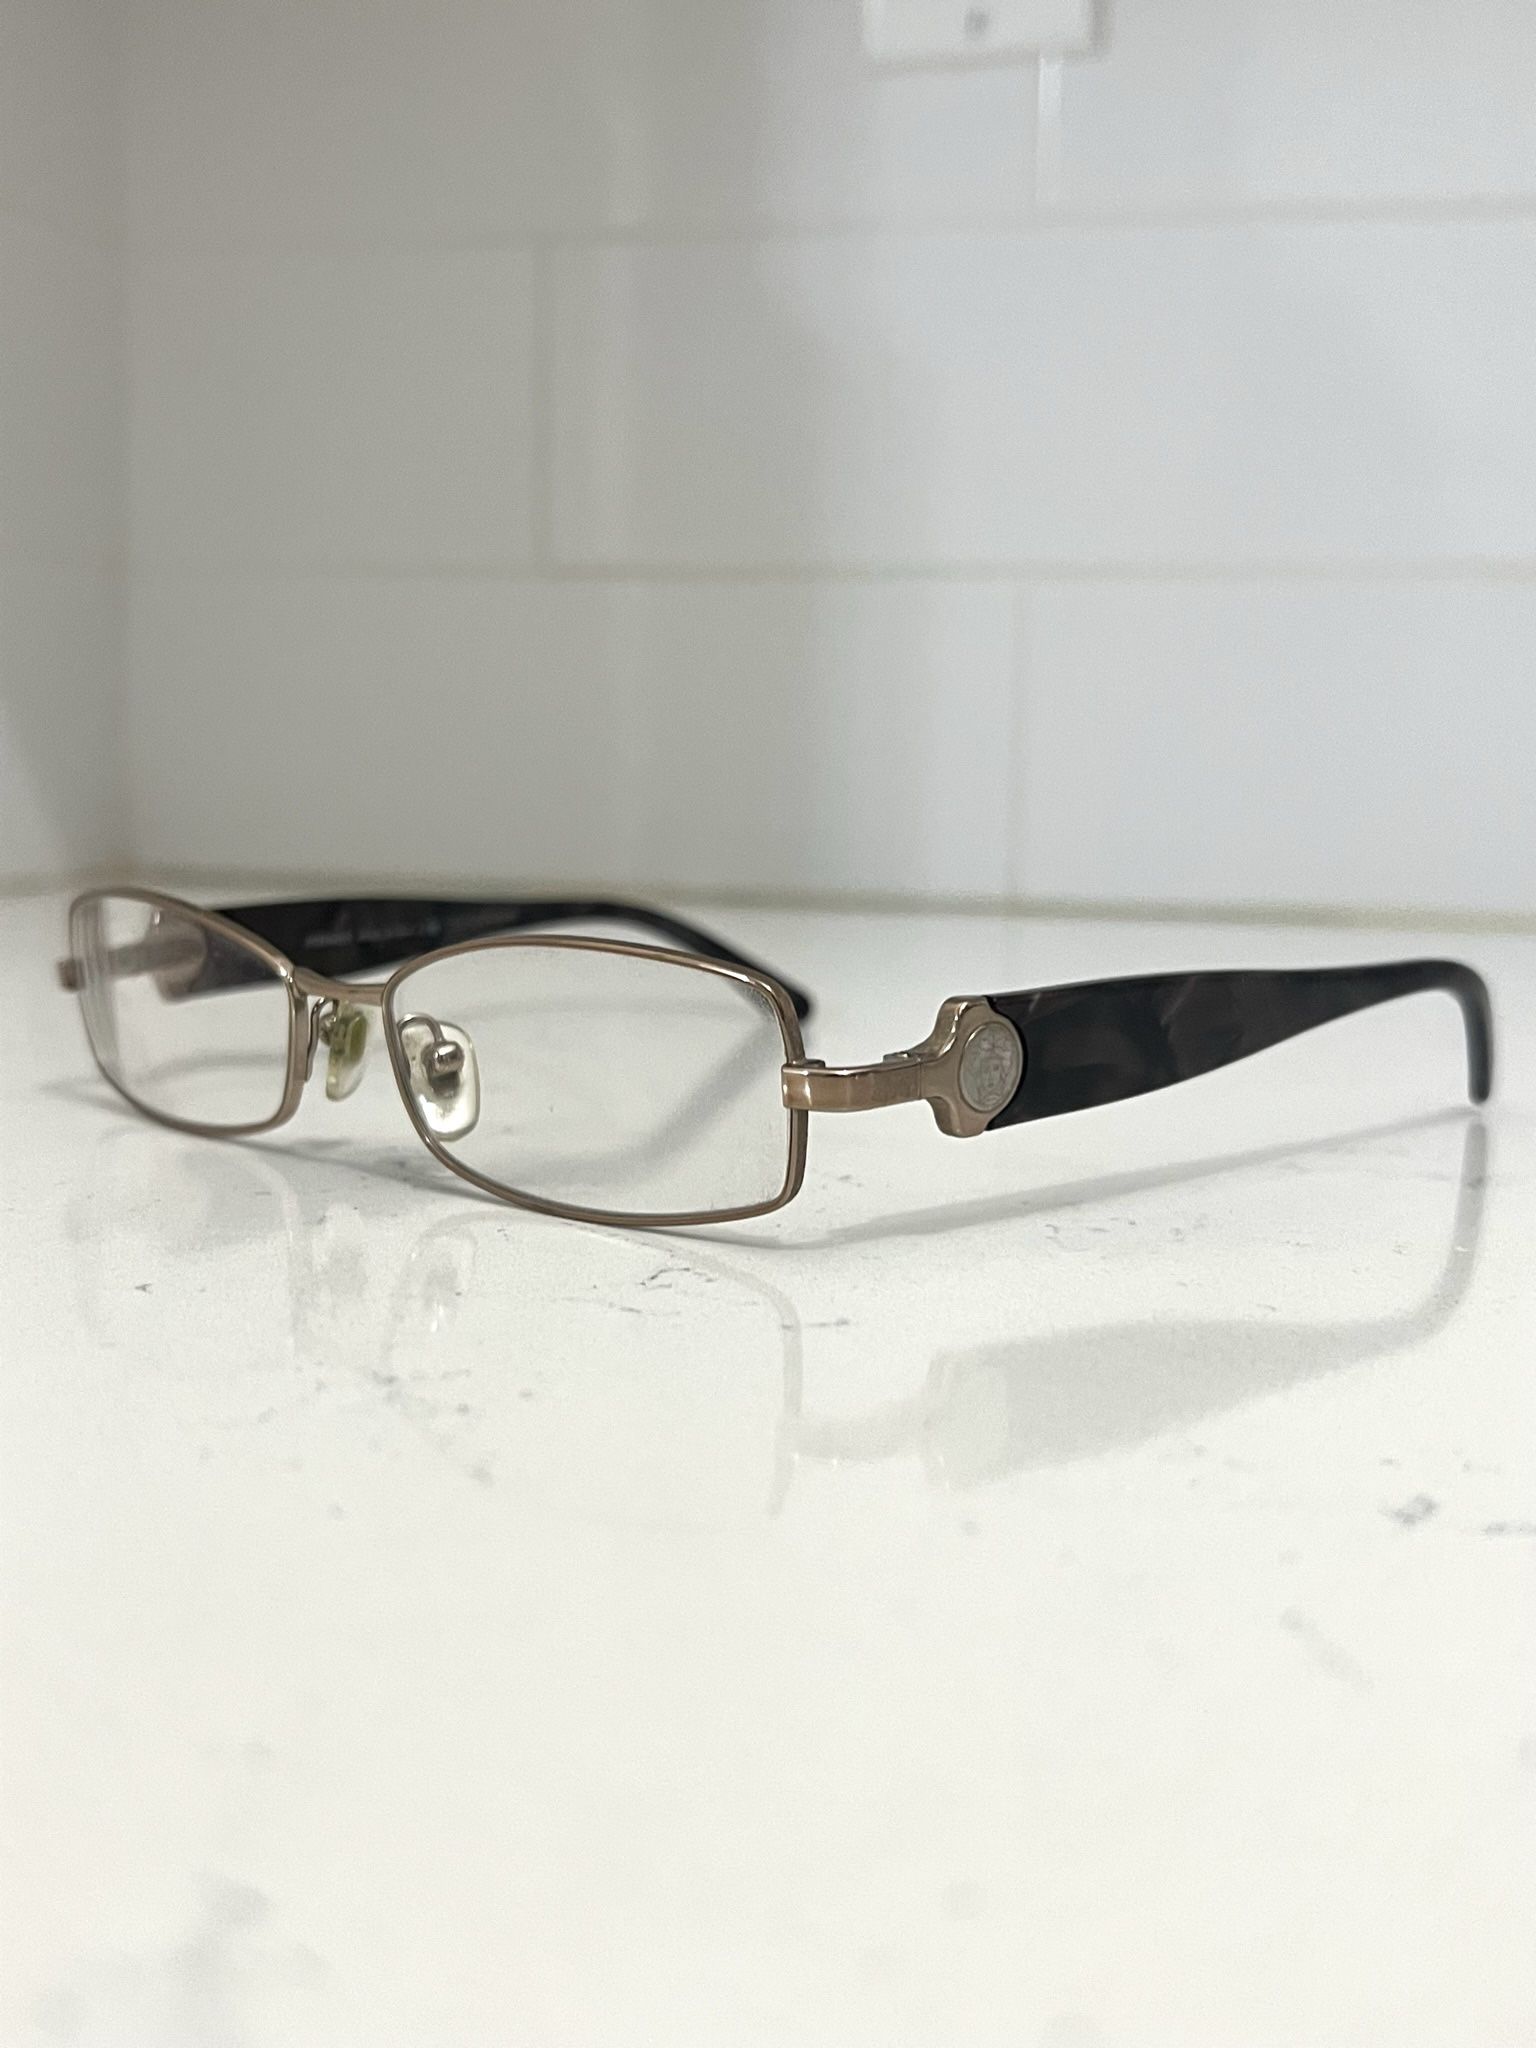 Versace Women’s Eyeglasses Optical Glasses Frames Designer